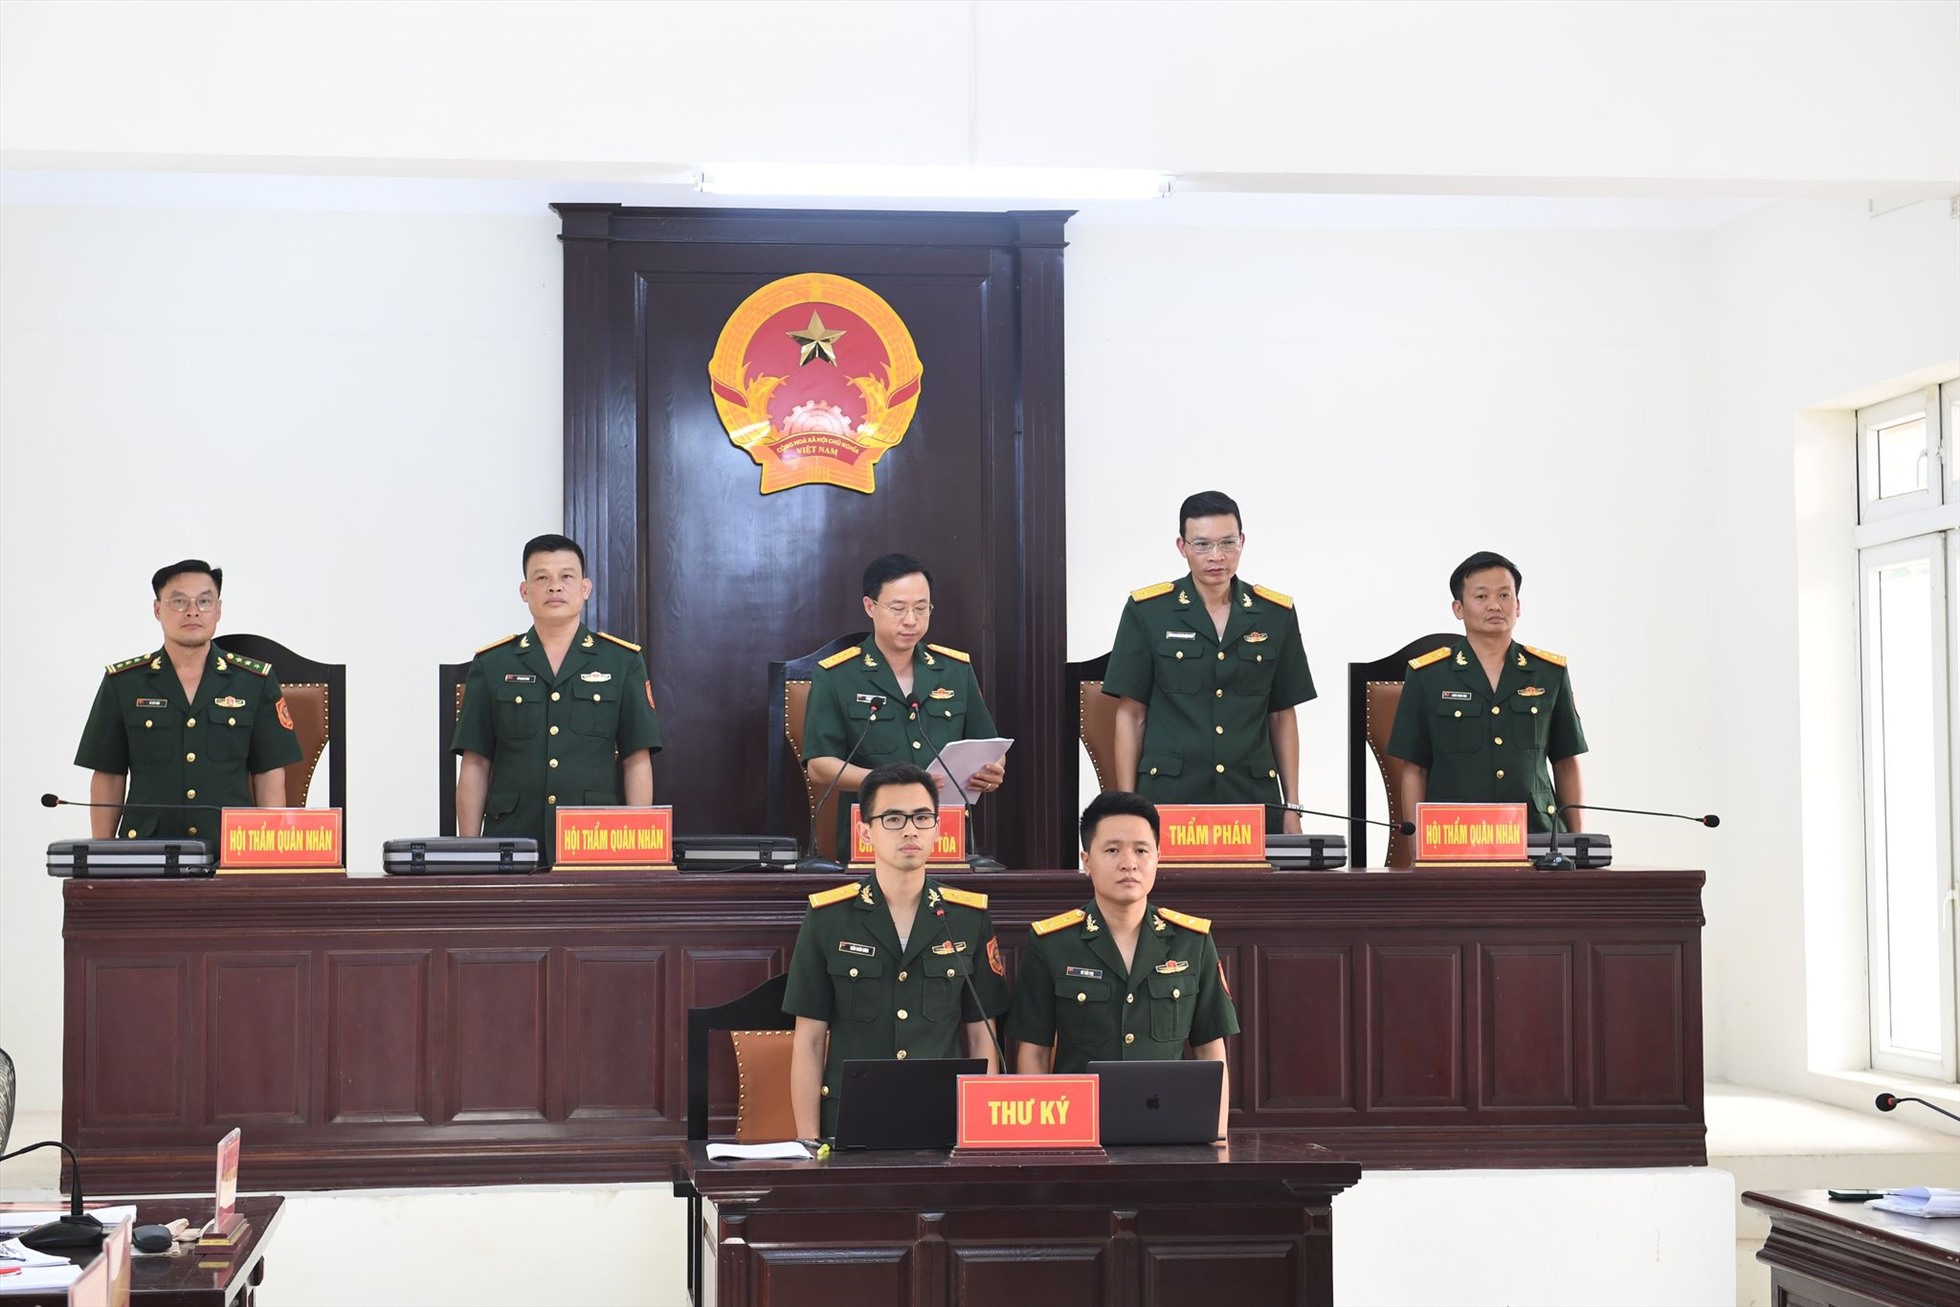 Hội đồng xét xử Toà án quân sự Thủ đô Hà Nội tại buổi chiều công bố bản án với 7 bị cáo trong vụ tham ô 50 tỉ đồng xảy ra tại Bộ Tư lệnh Cảnh sát biển Việt Nam. Ảnh: VOV